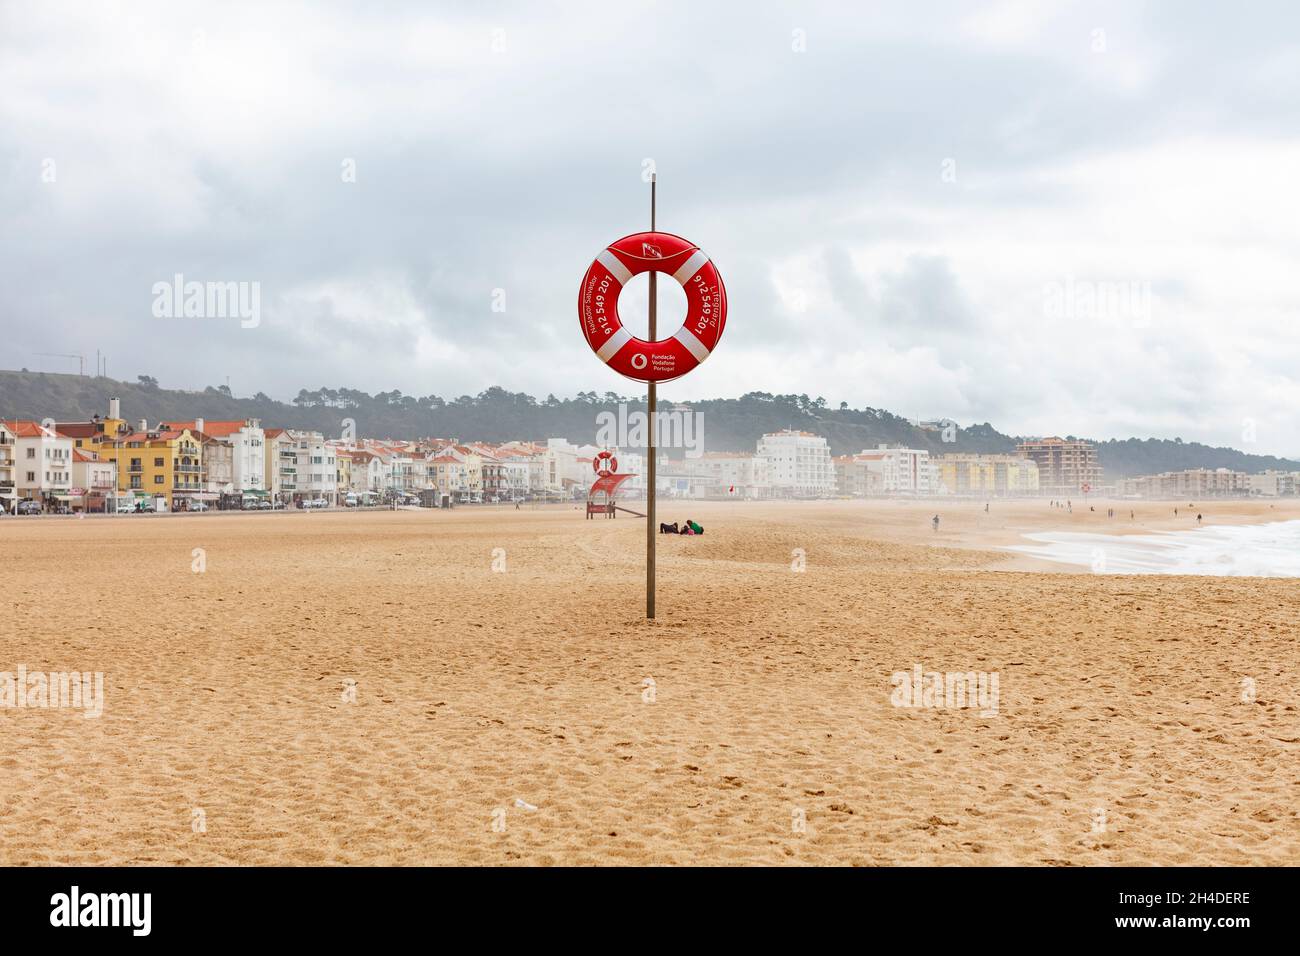 Leerer Strand von Nazaré in Portugal. Rettungsring am Strand zur Sicherheit Stock Photo